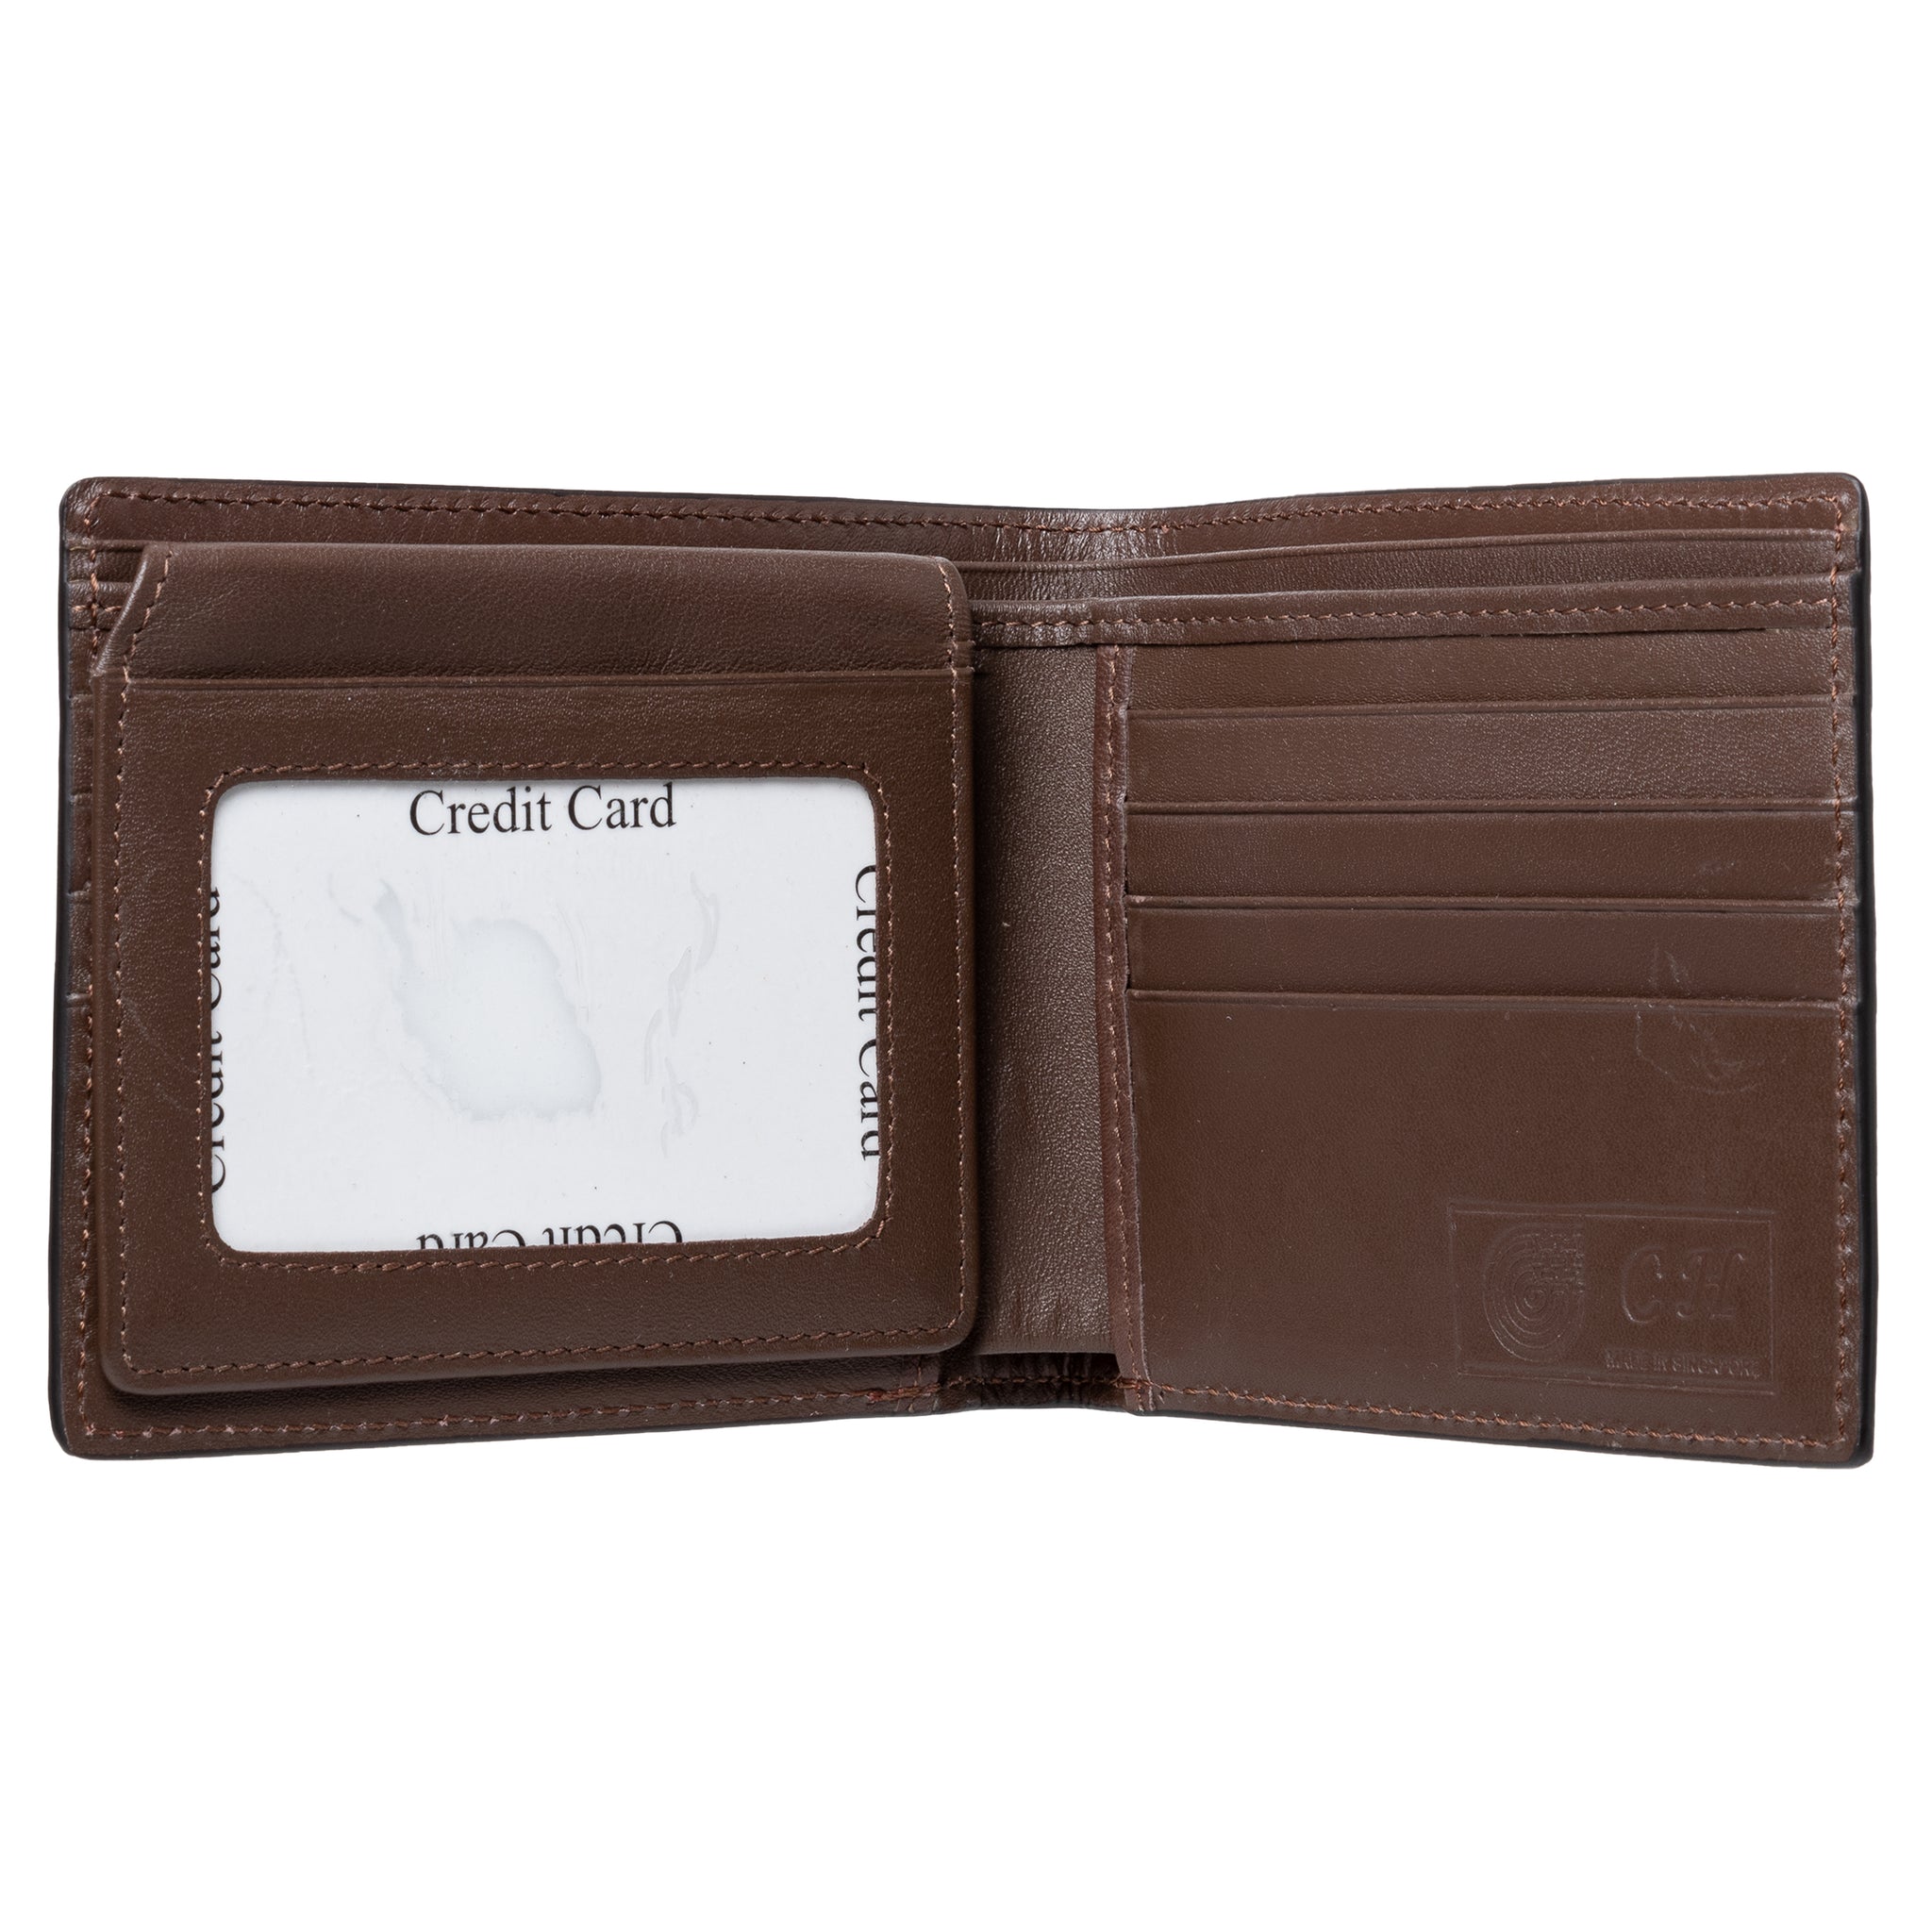 Men's Billfold Wallet NSB 902 Brown Glazed